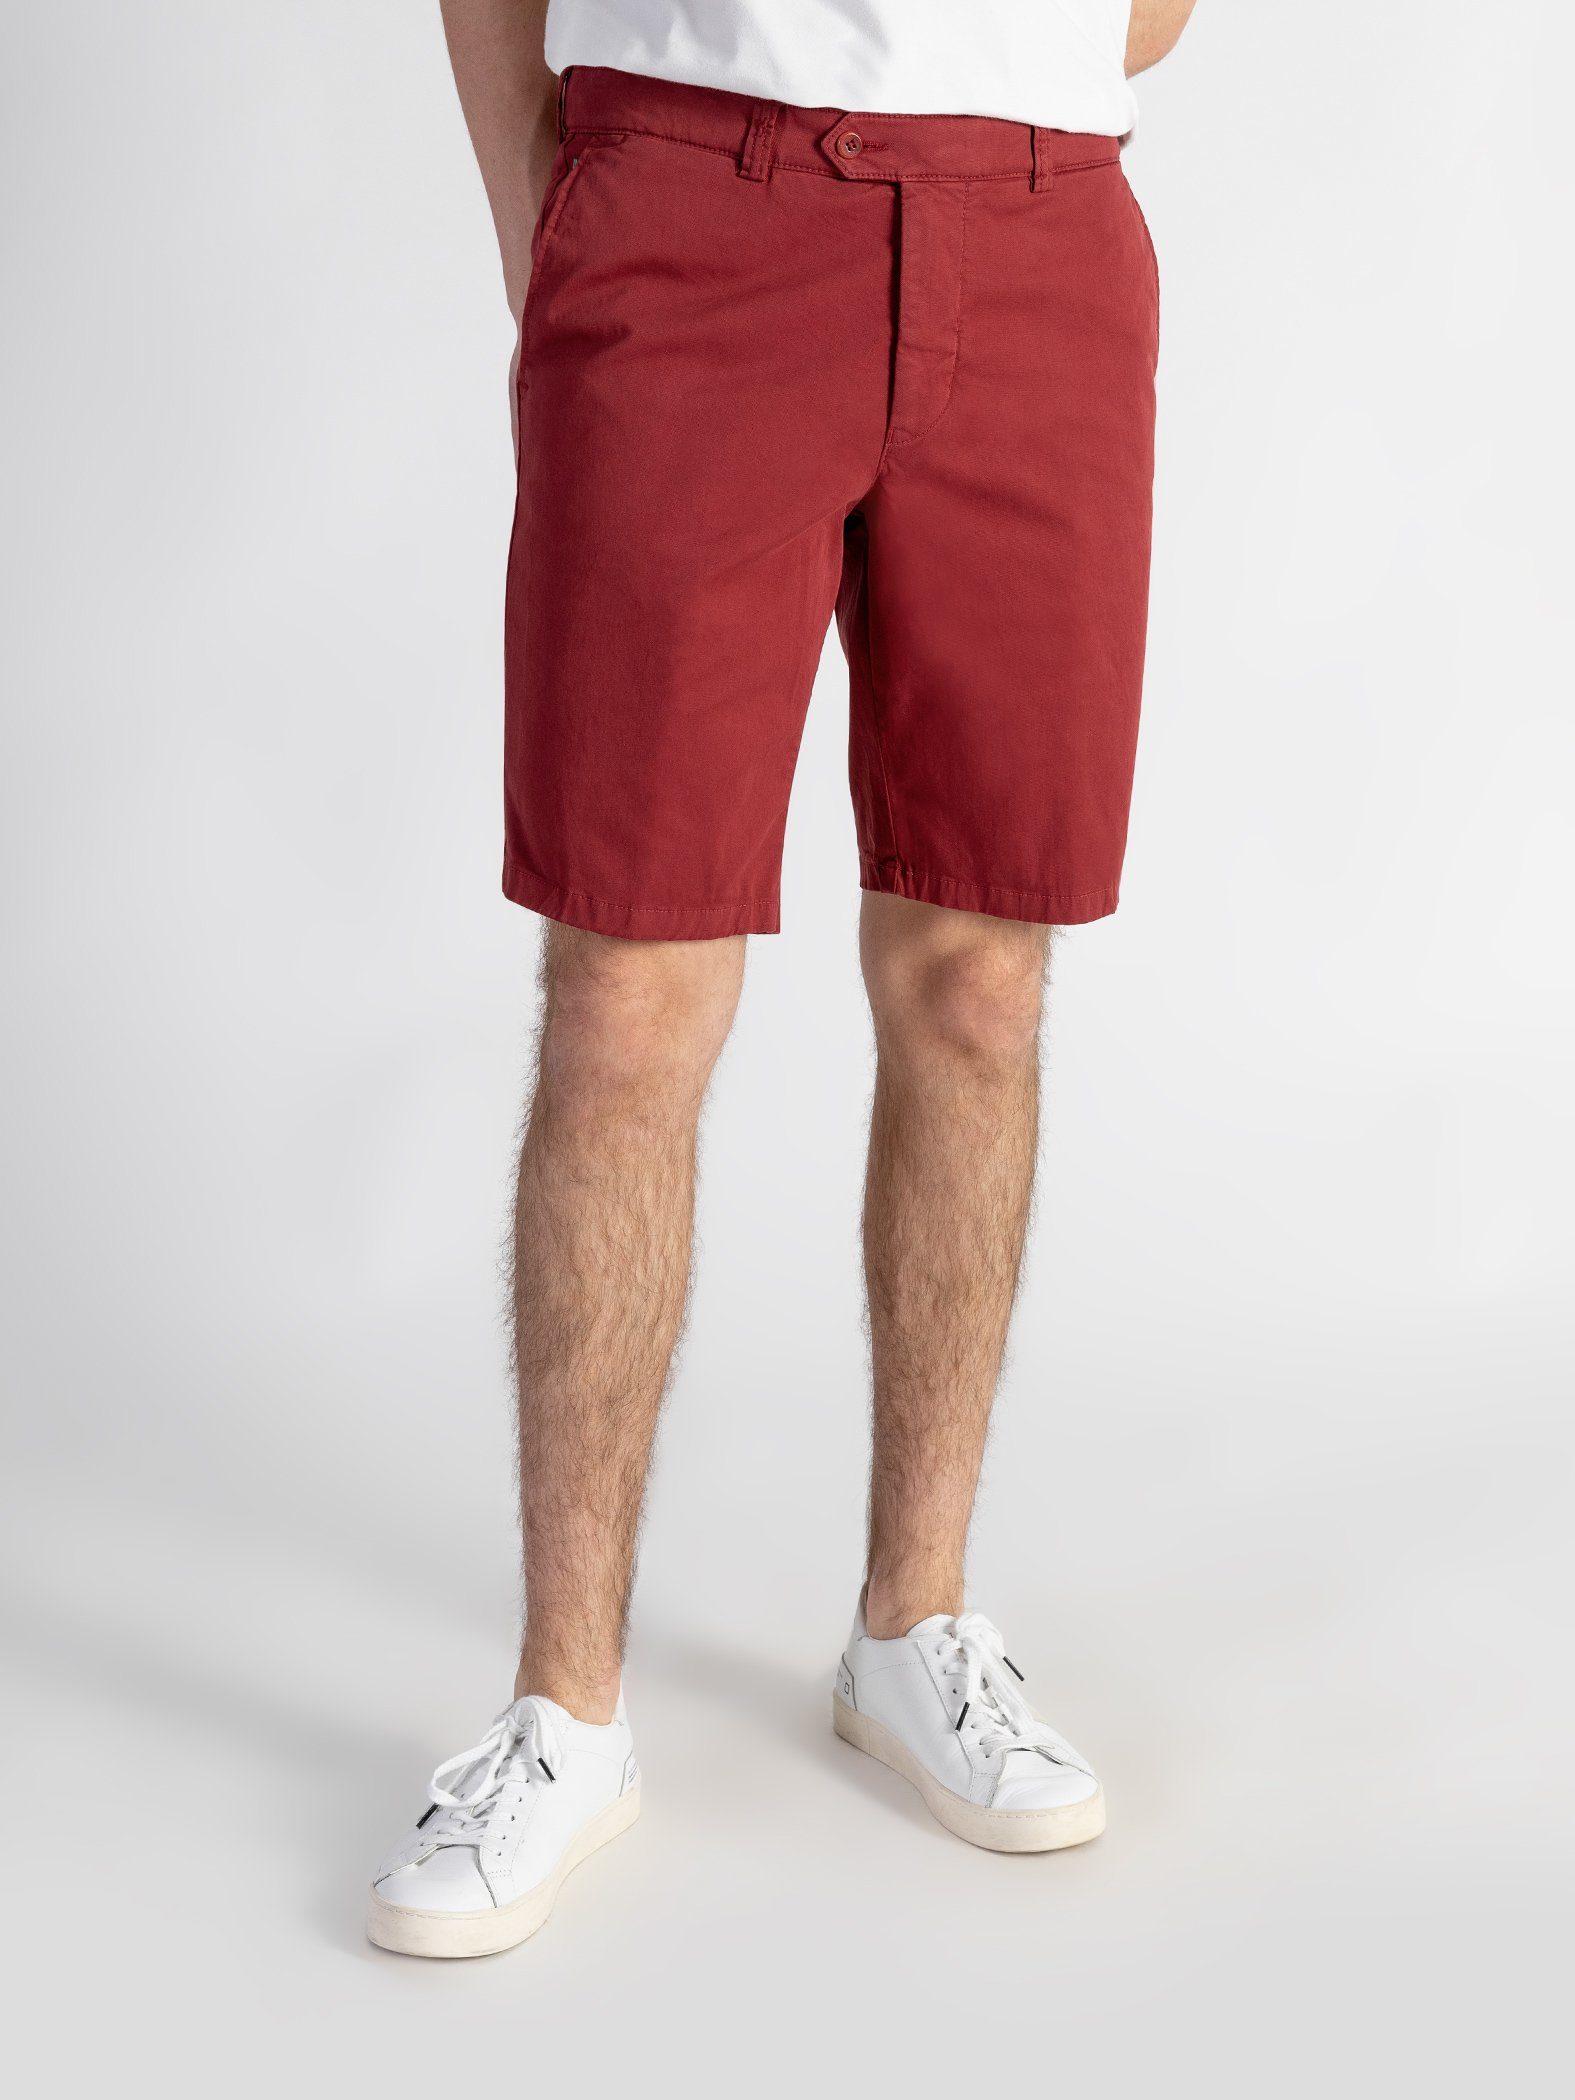 TwoMates Shorts Shorts mit elastischem Bund, Farbauswahl, GOTS-zertifiziert Rot